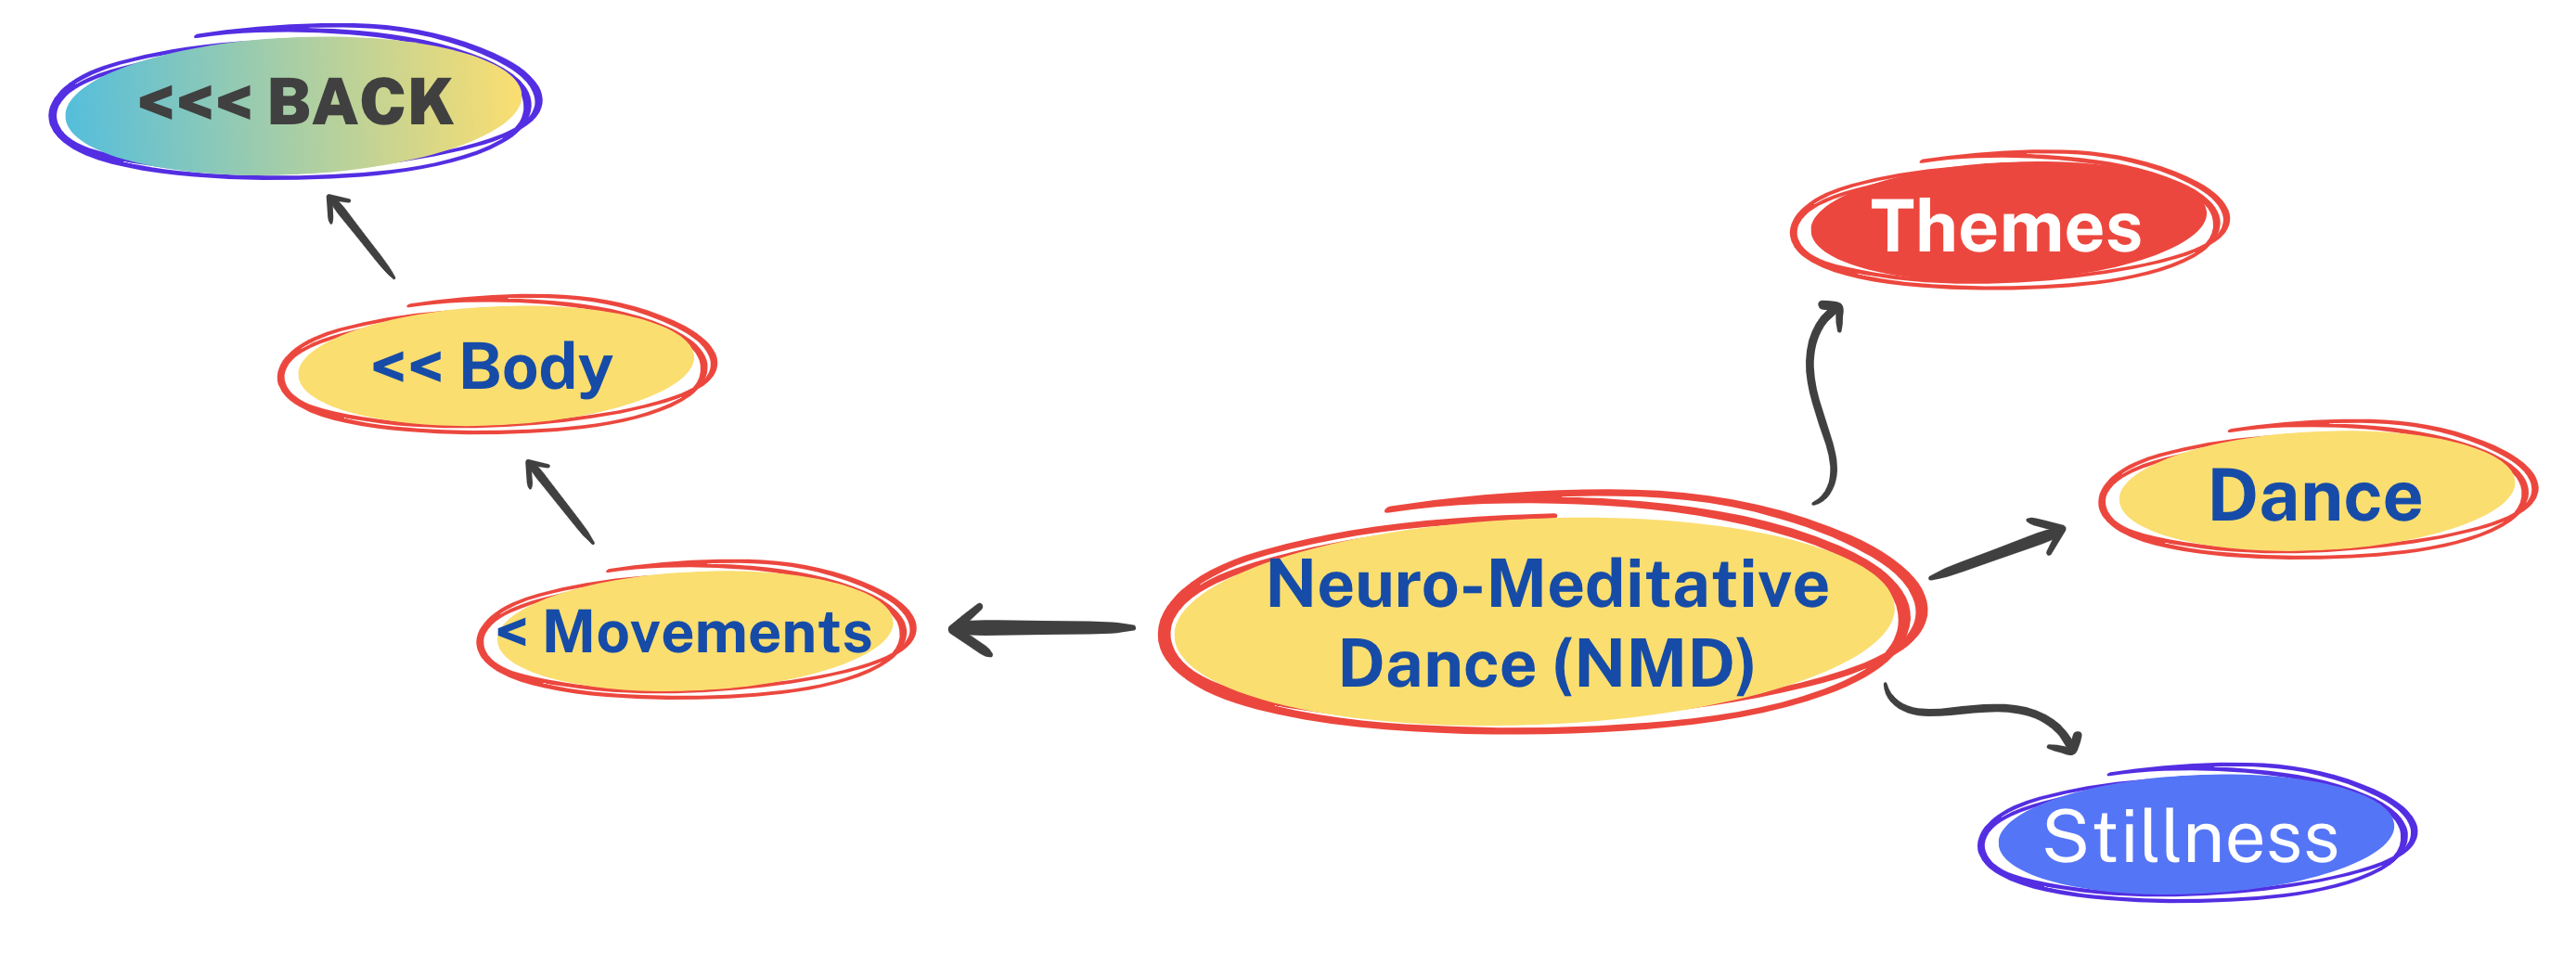 Neuro-Meditative Dance